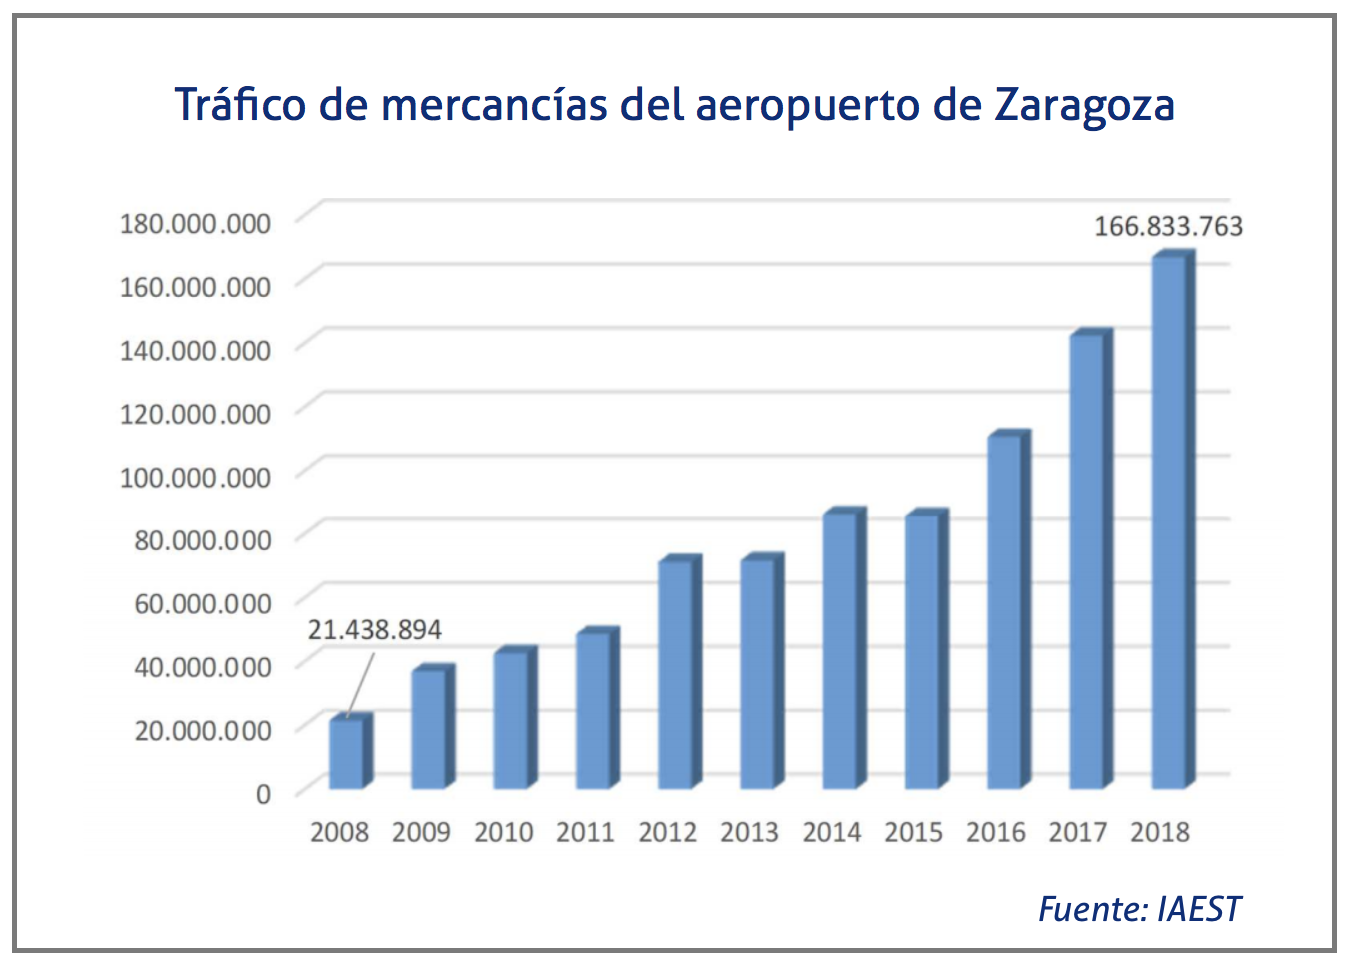 Trafico de mercancias del aeropuerto de Zaragoza